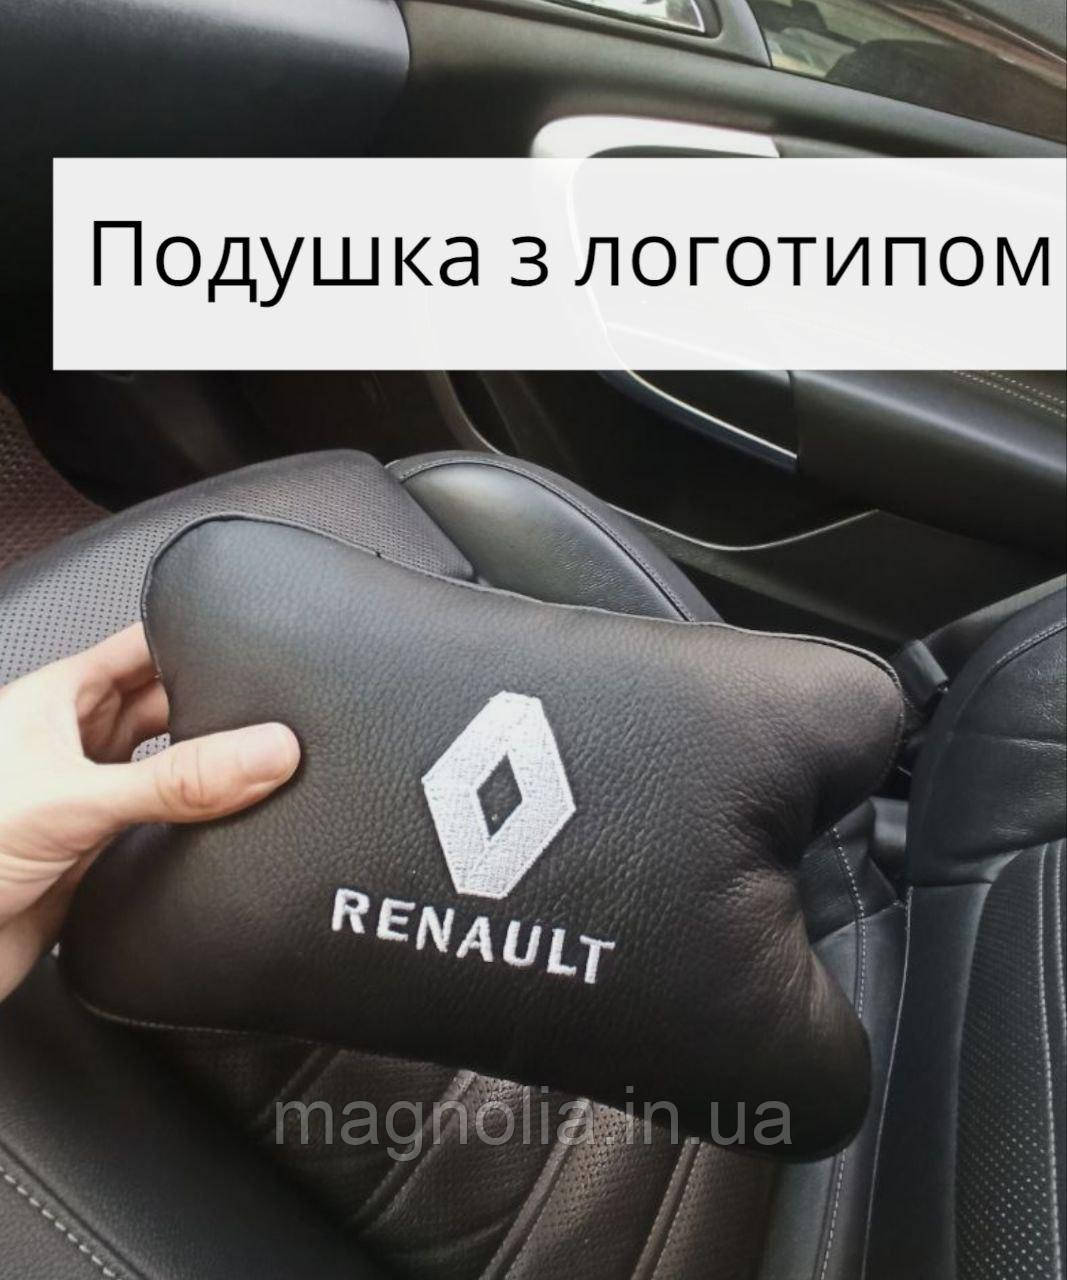 Подушка з натуральної шкіри з логотипом автомобіля Renault підголівник з вишивкою марки автомобілів під шию